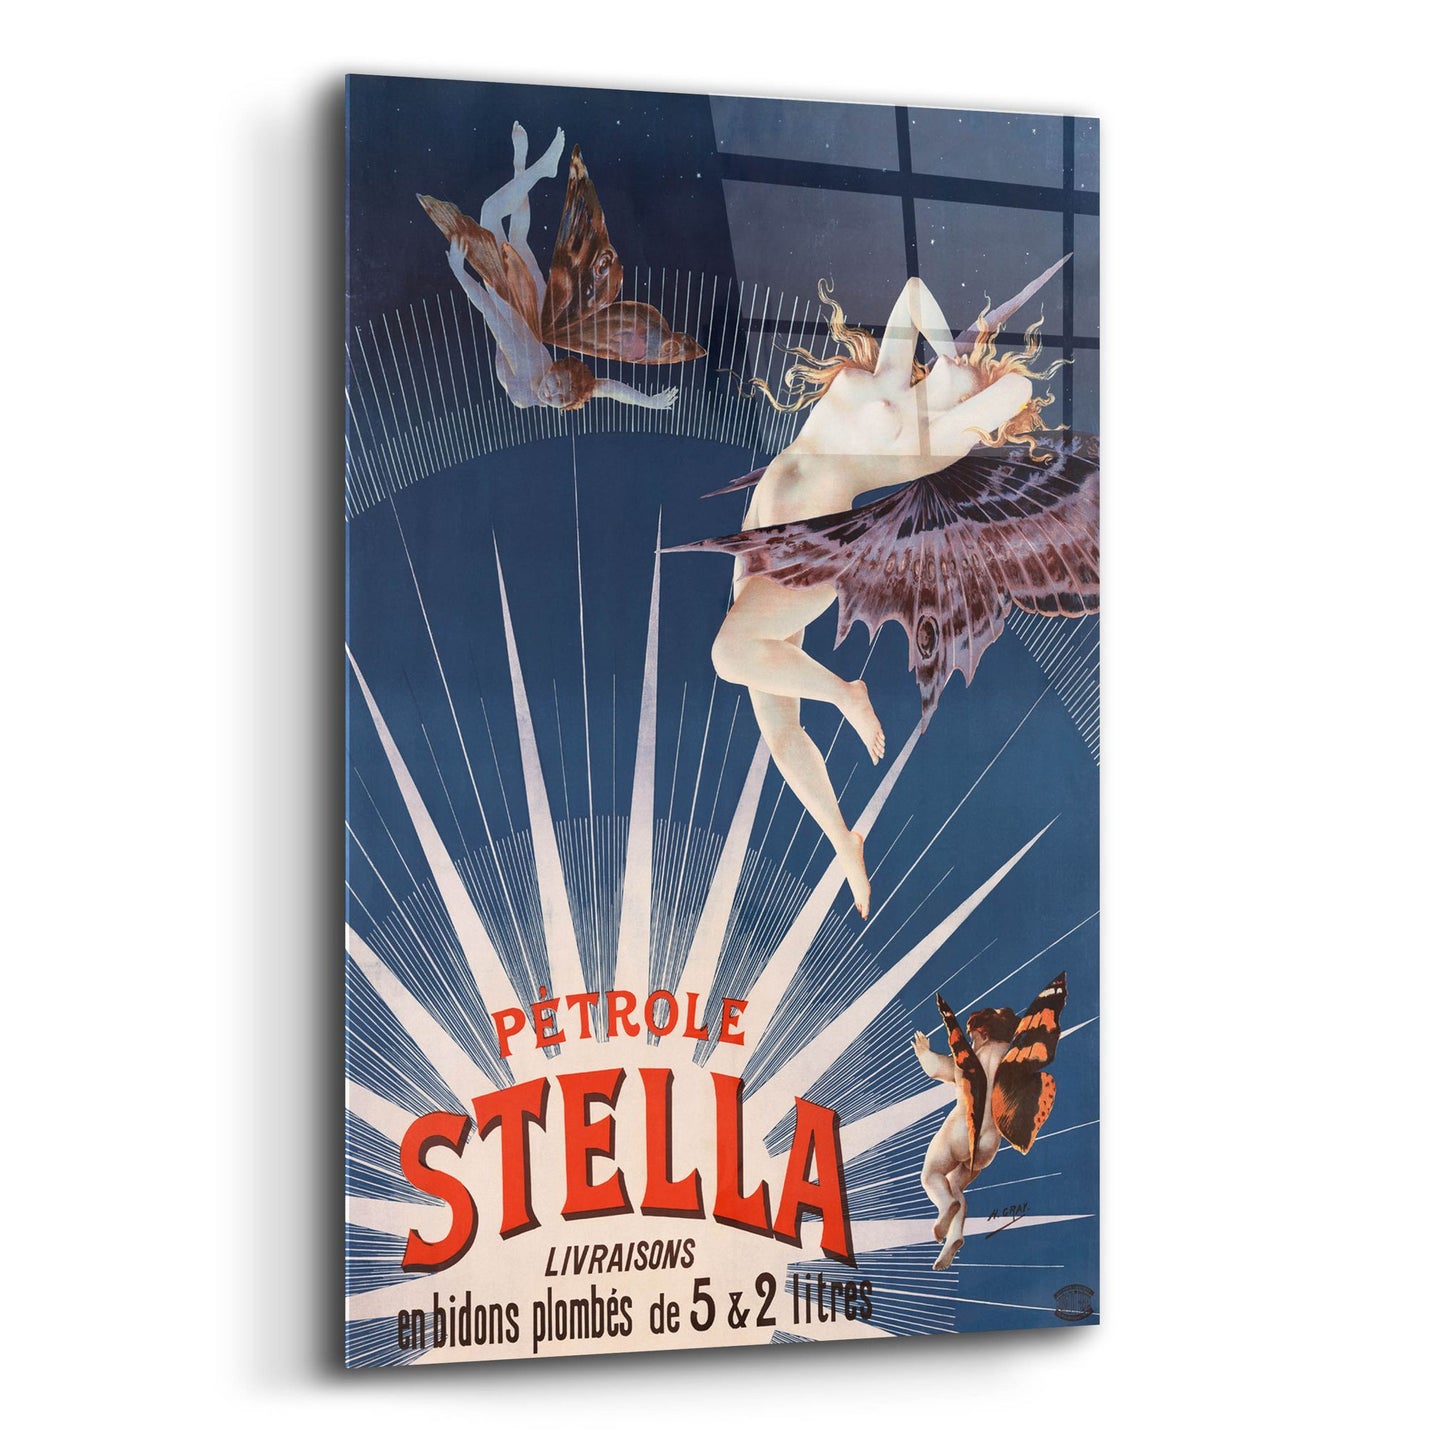 Epic Art 'Petrole Stella' by Gray, Acrylic Glass Wall Art,16x24